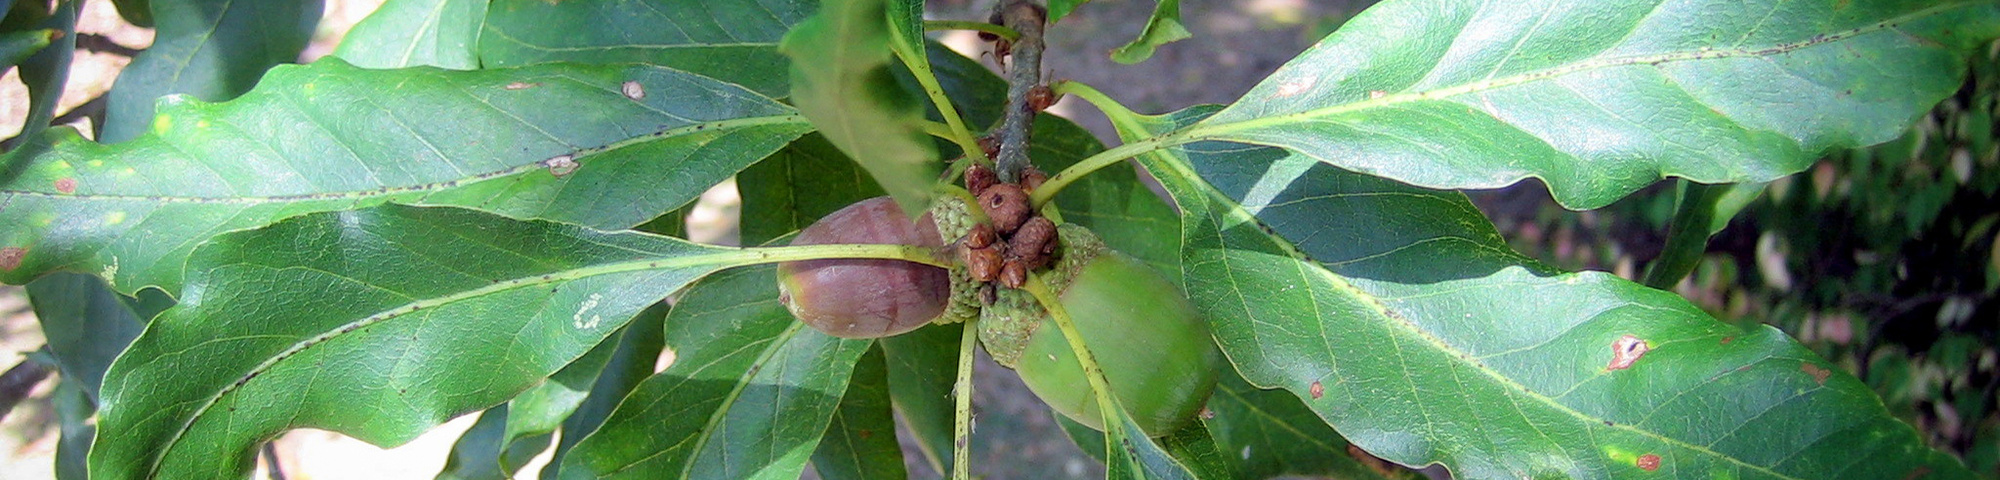 Quercus petraea 'Mespilifolia'